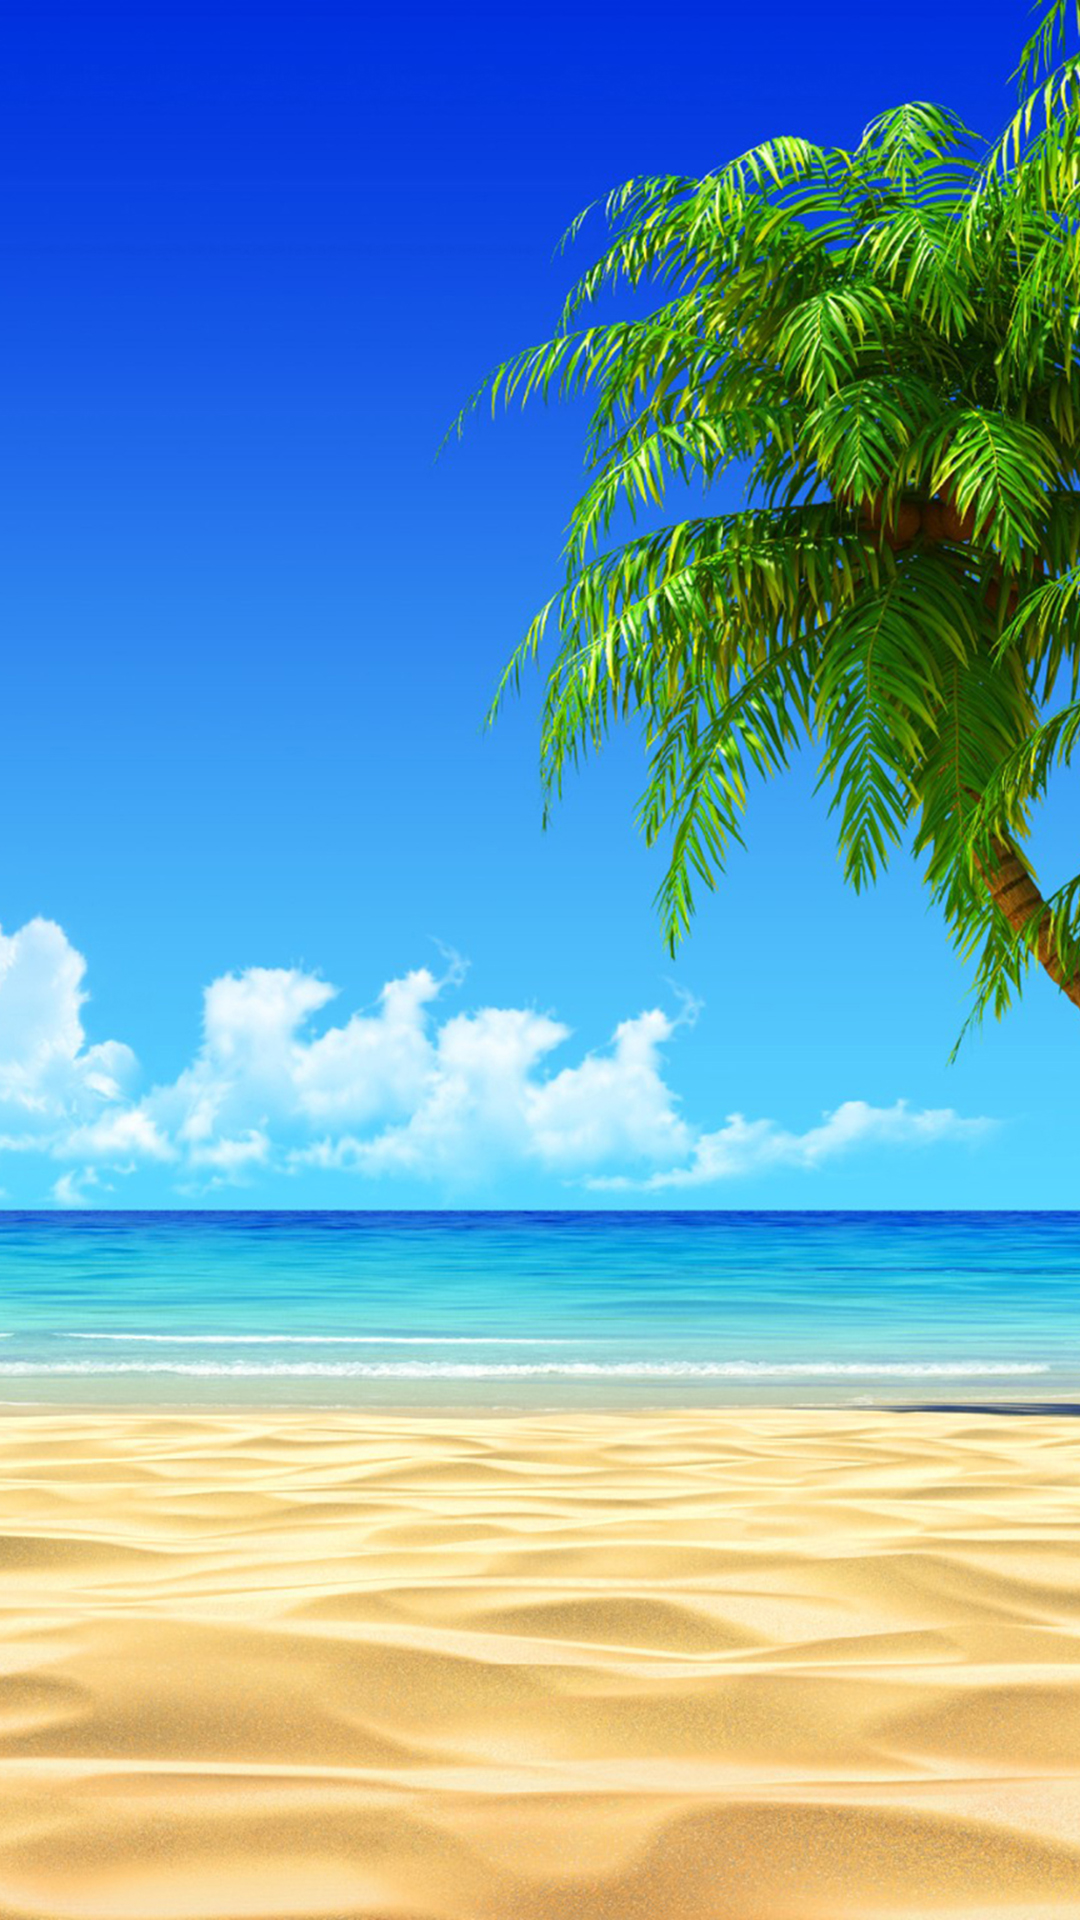 coconut tree wallpaper hd,sky,natural landscape,nature,tropics,ocean